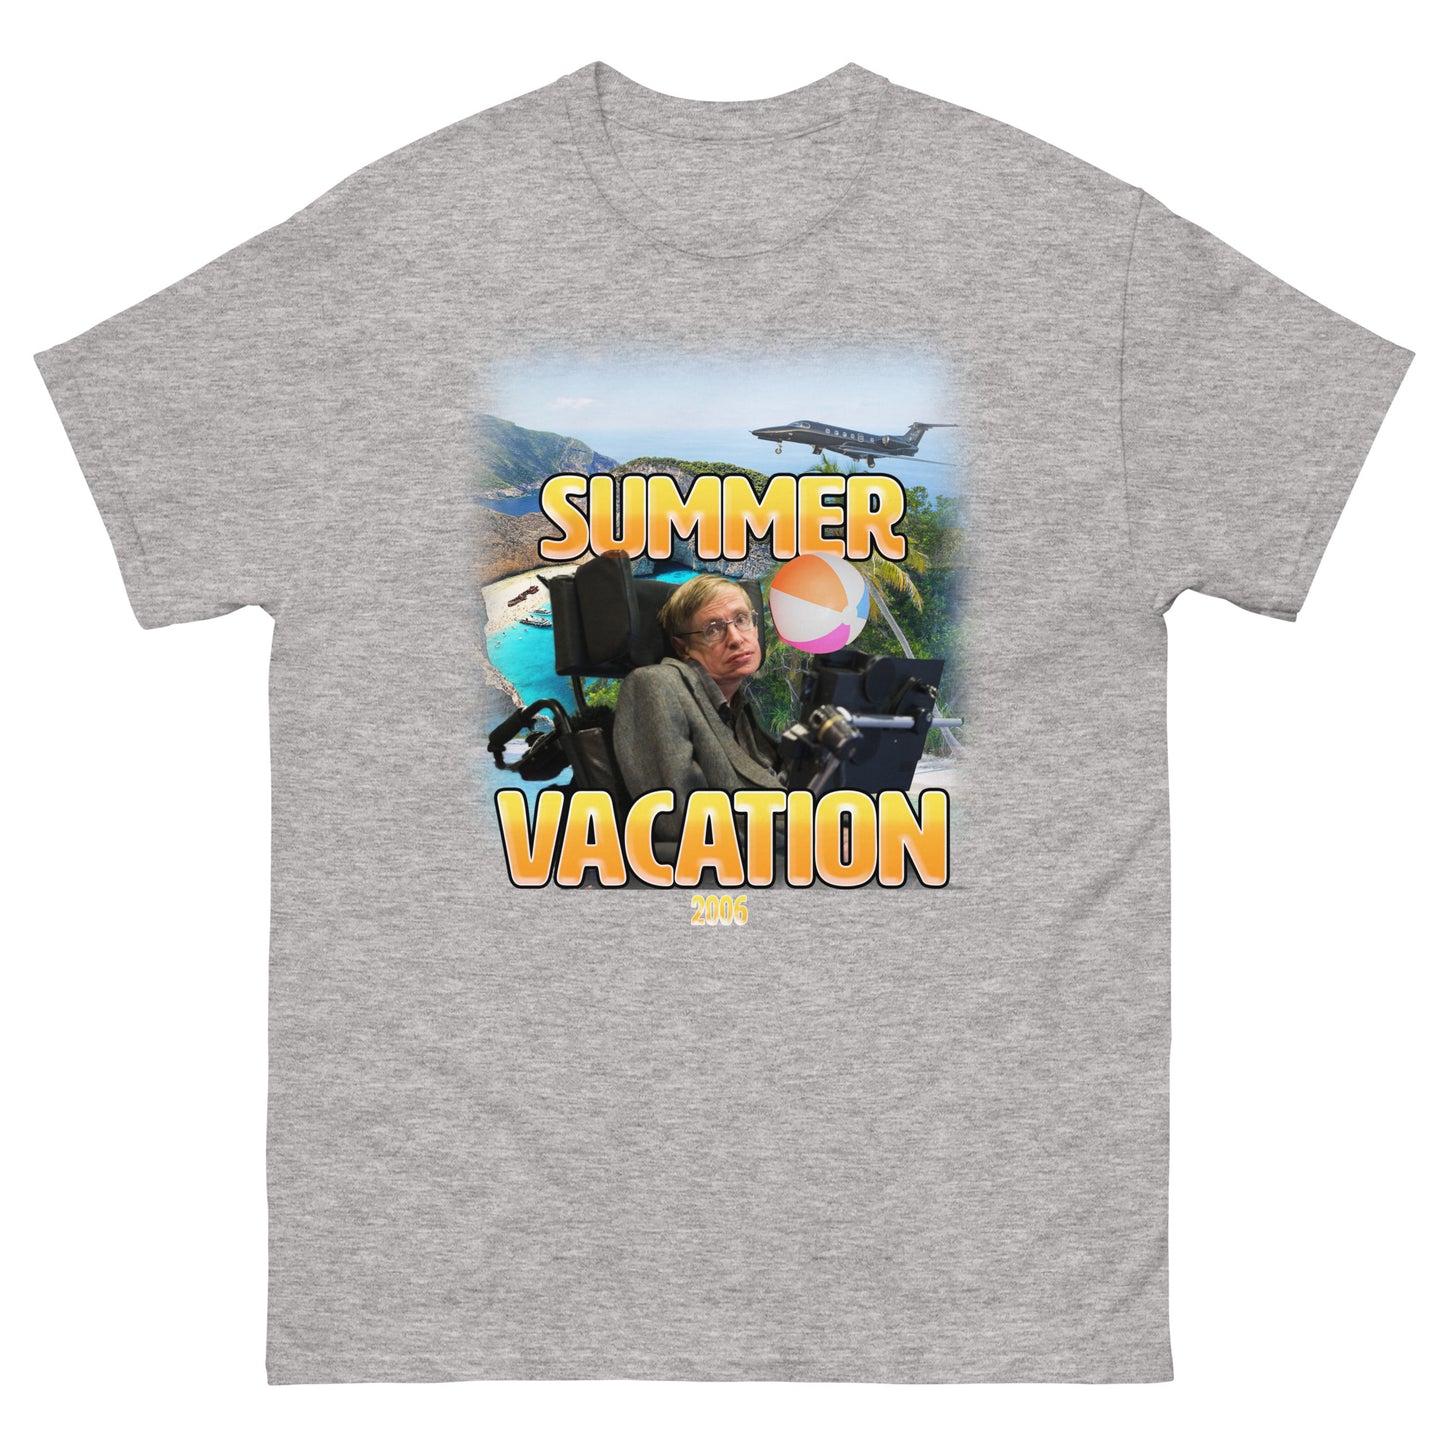 Steve's Summer Vacation